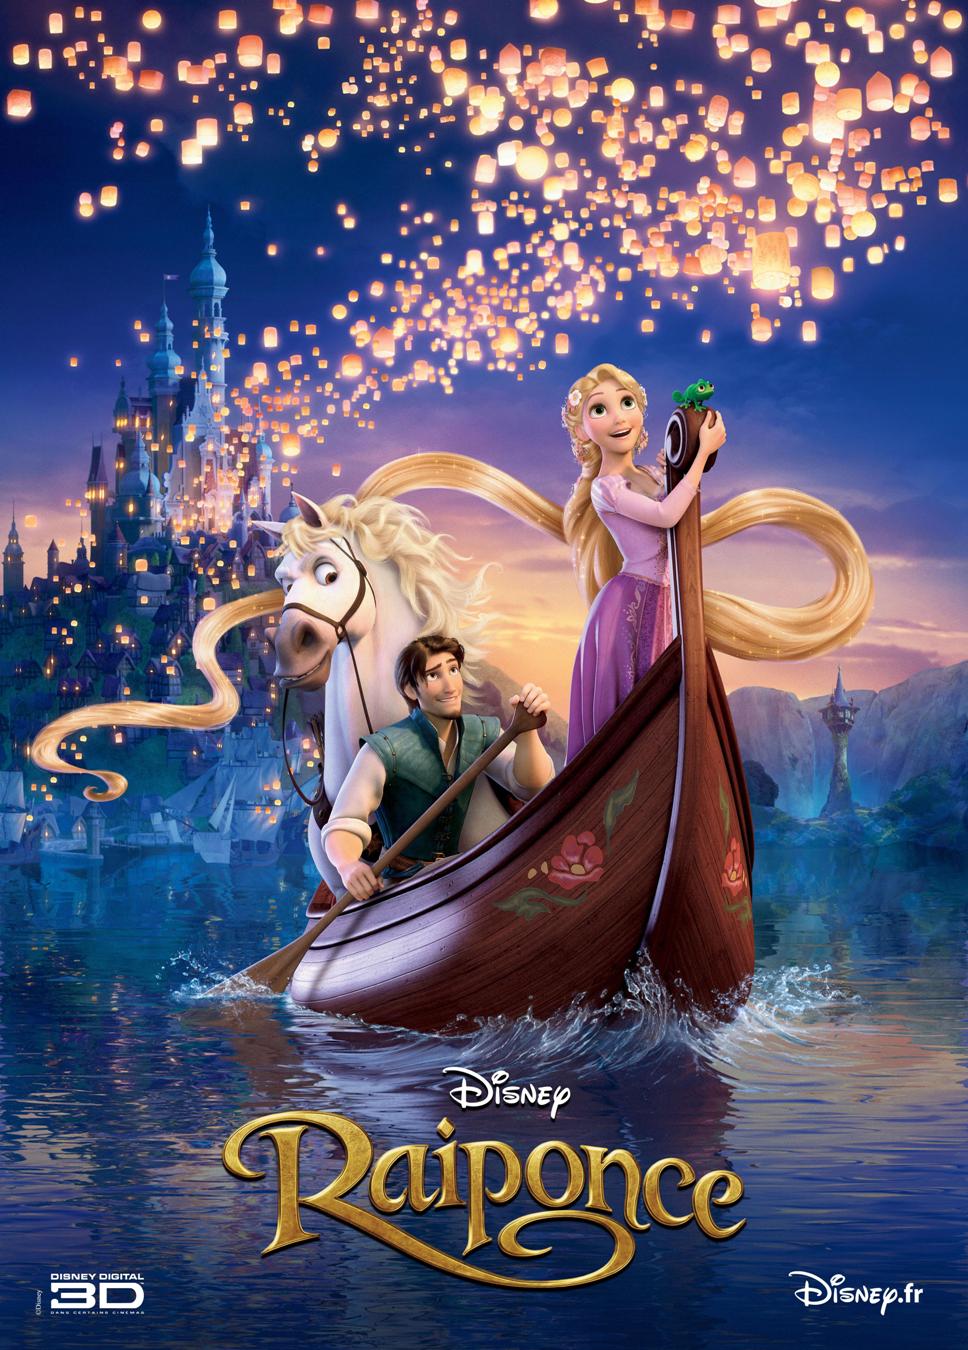 Raiponce, un film Disney à voir et à revoir sans modération 